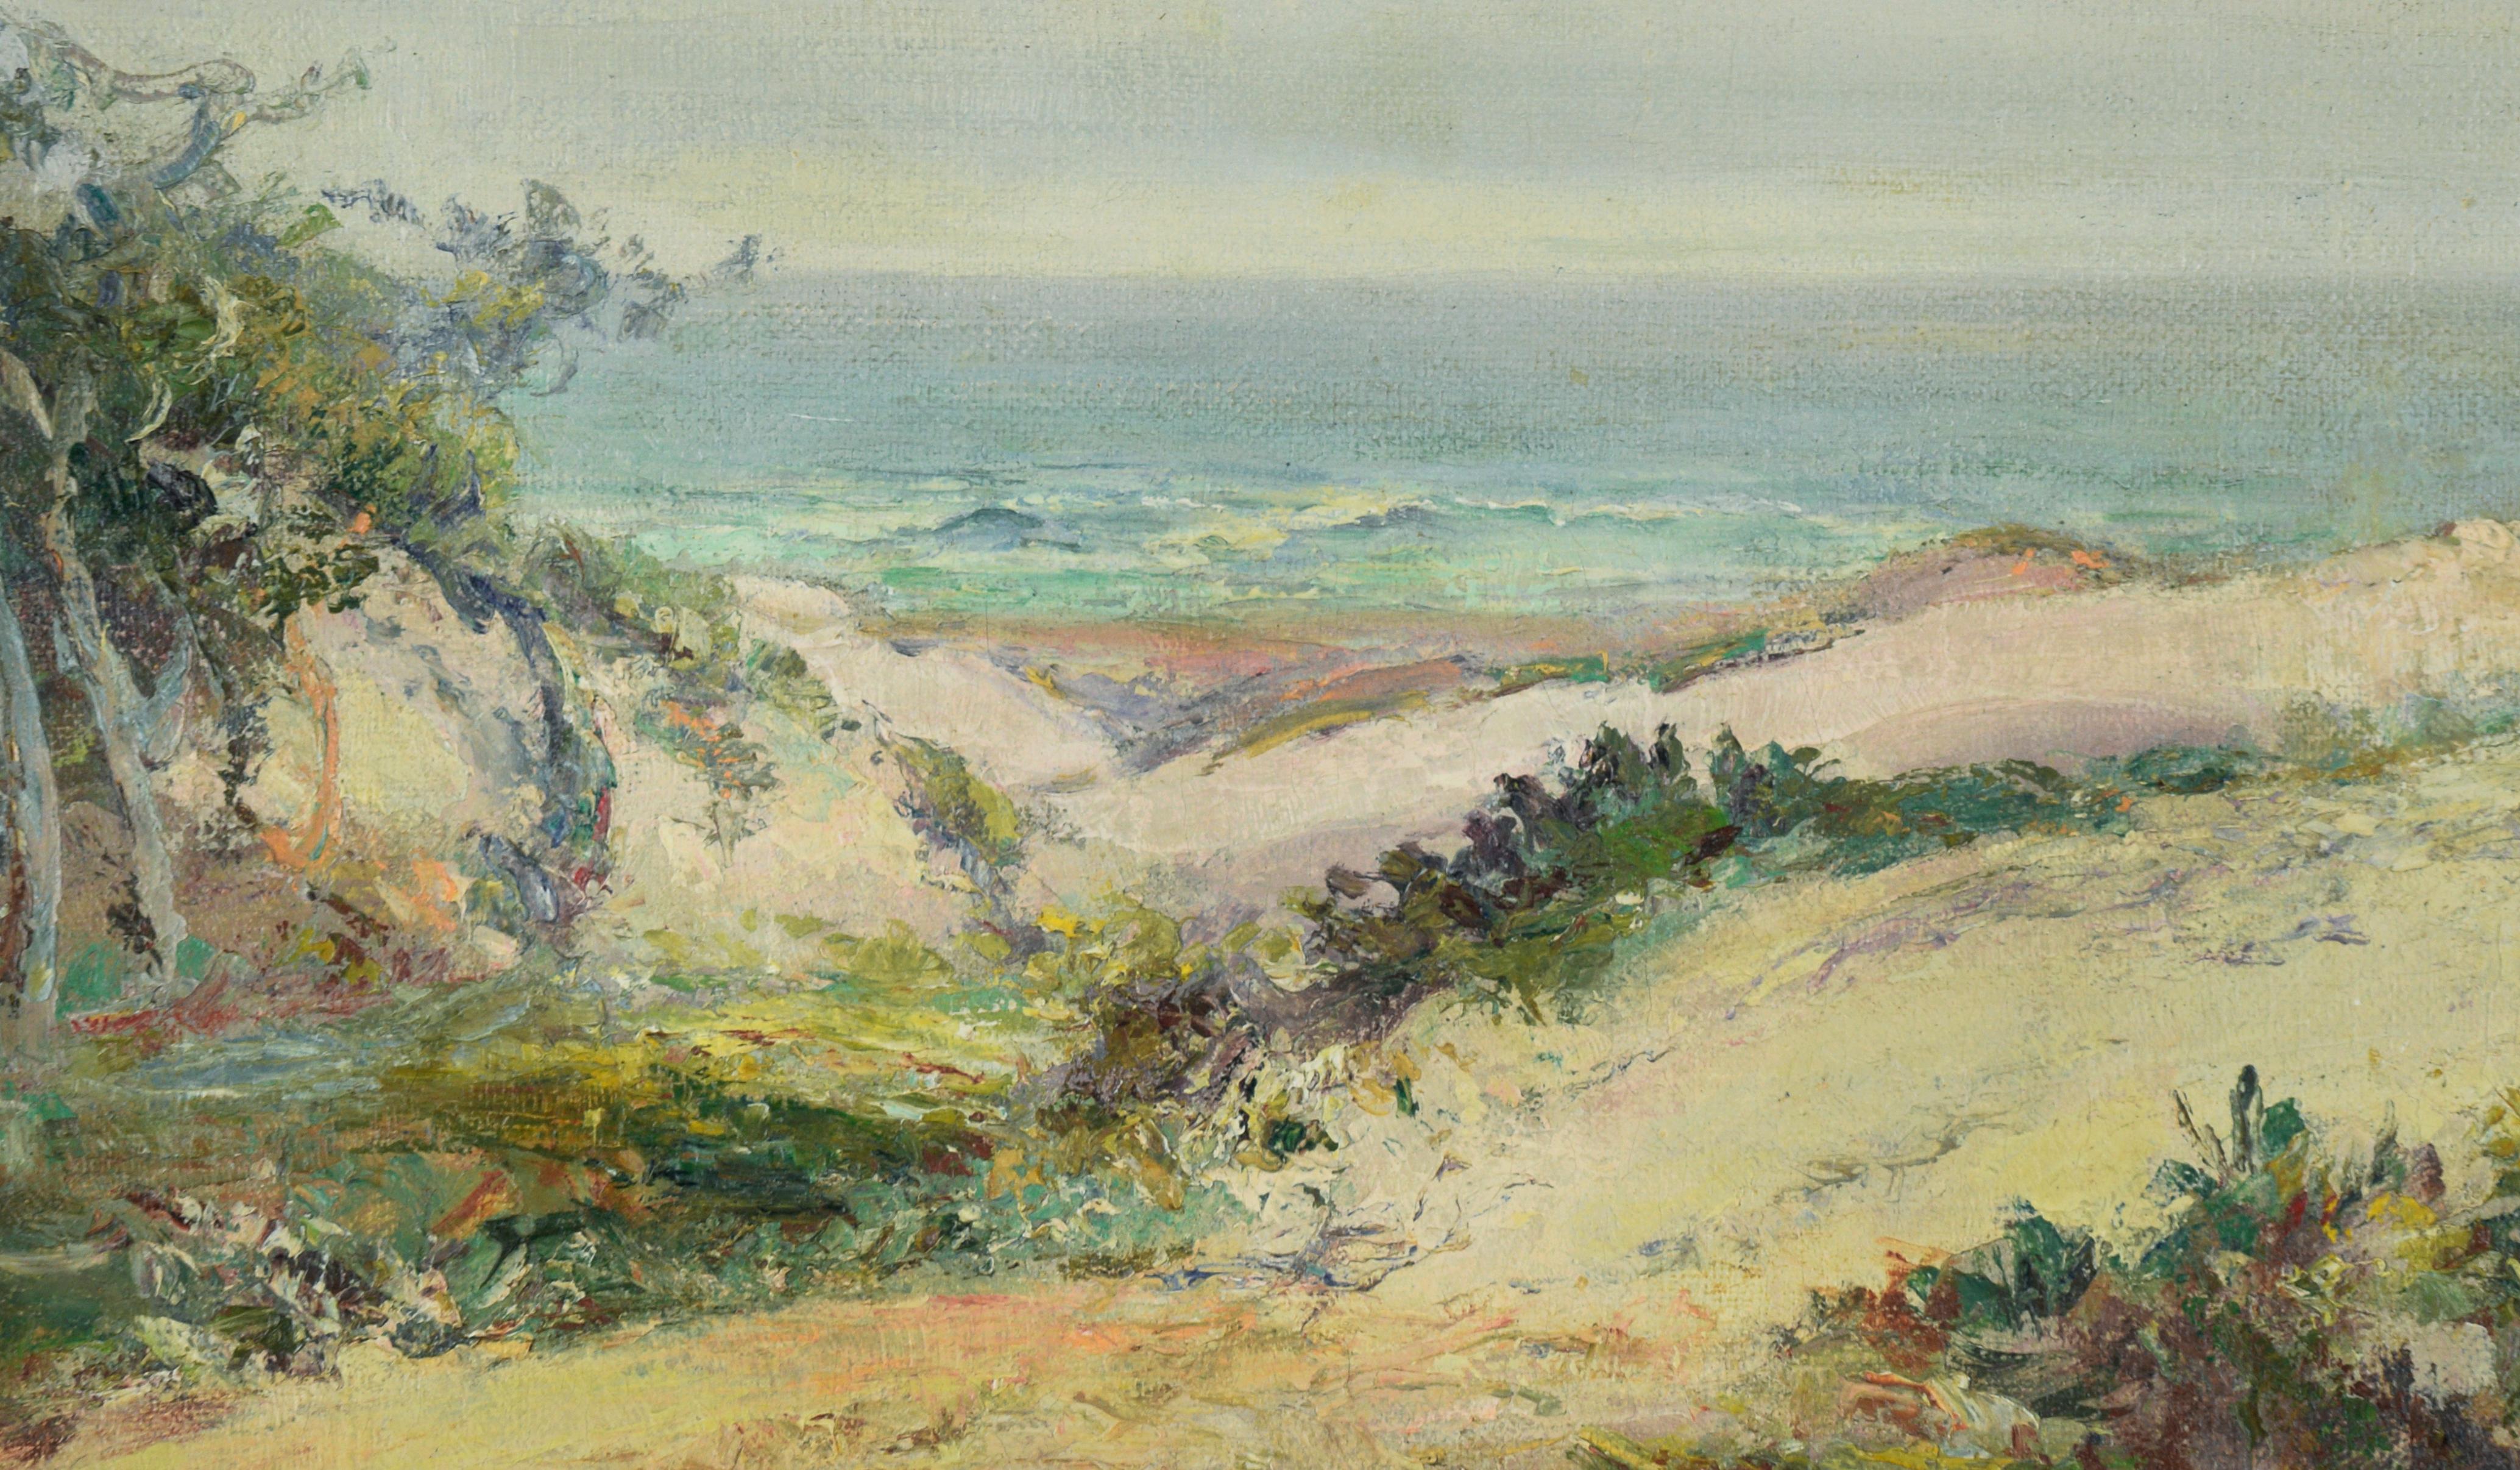 Carmel by the Sea - Beach, California Coastline - Huile sur lin, 1927 - Painting de Charles Harmon